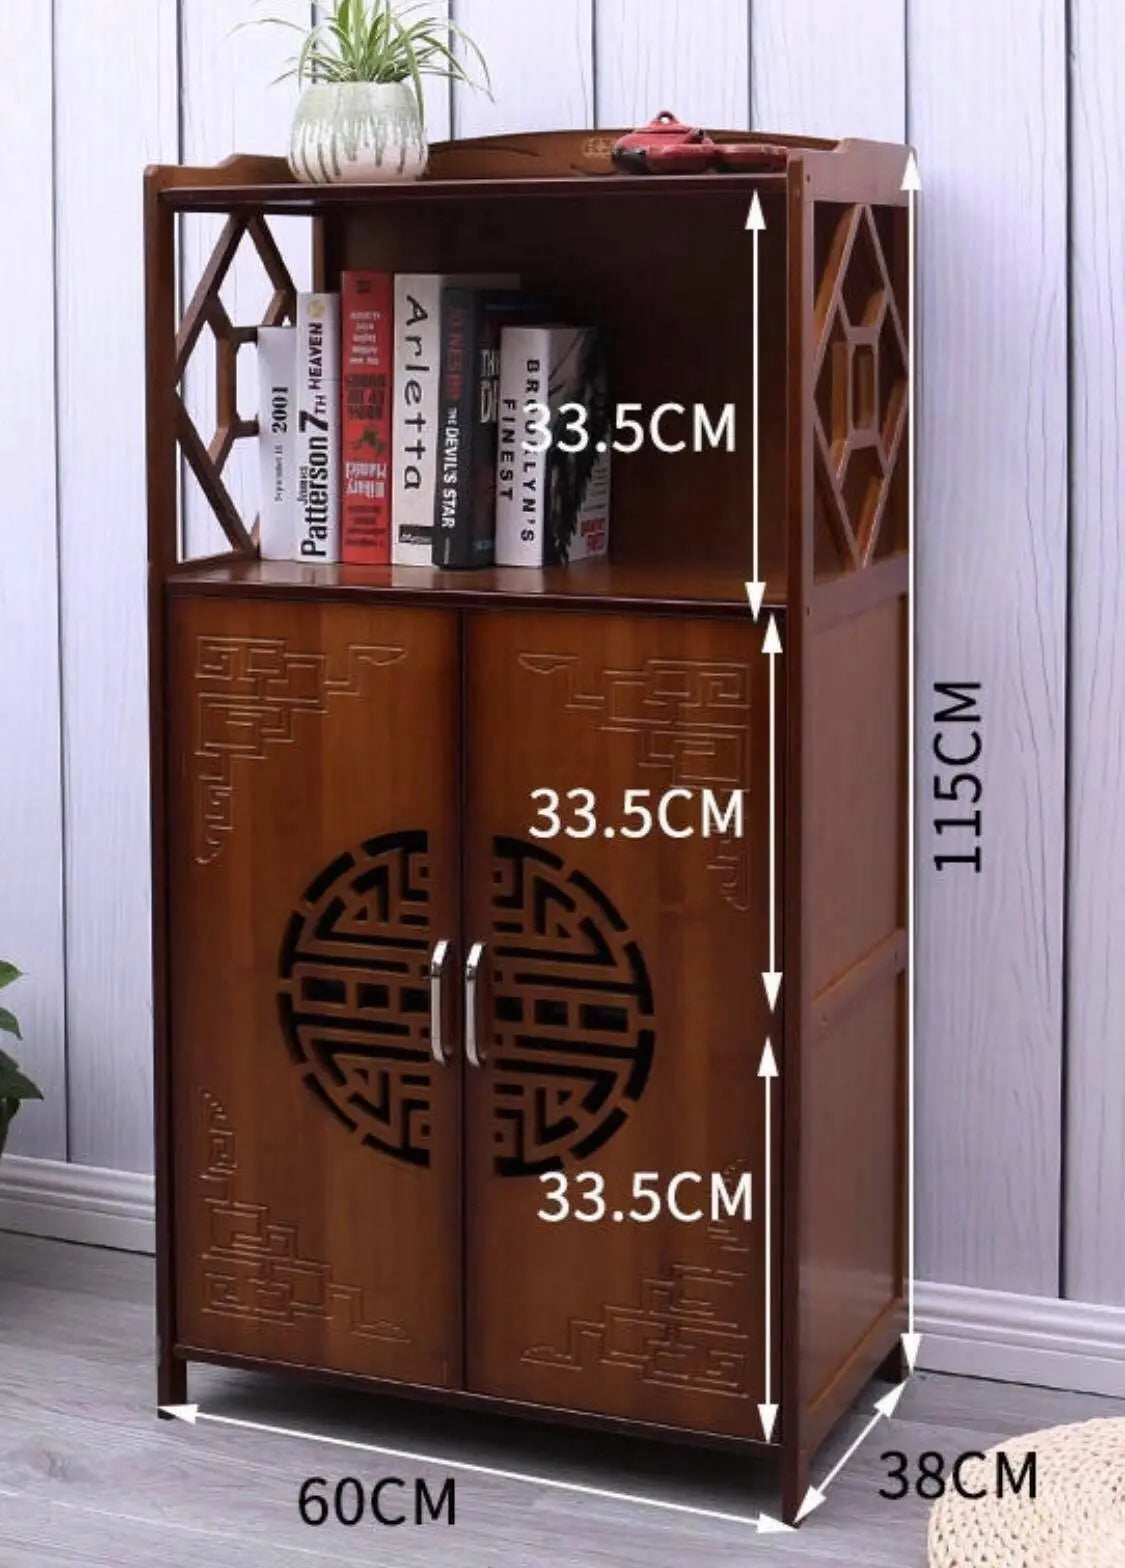 Bamboo Bookcase Bookshelf Cabinet Shoe Case Storage Organizer With Doors Antique Style everythingbamboo